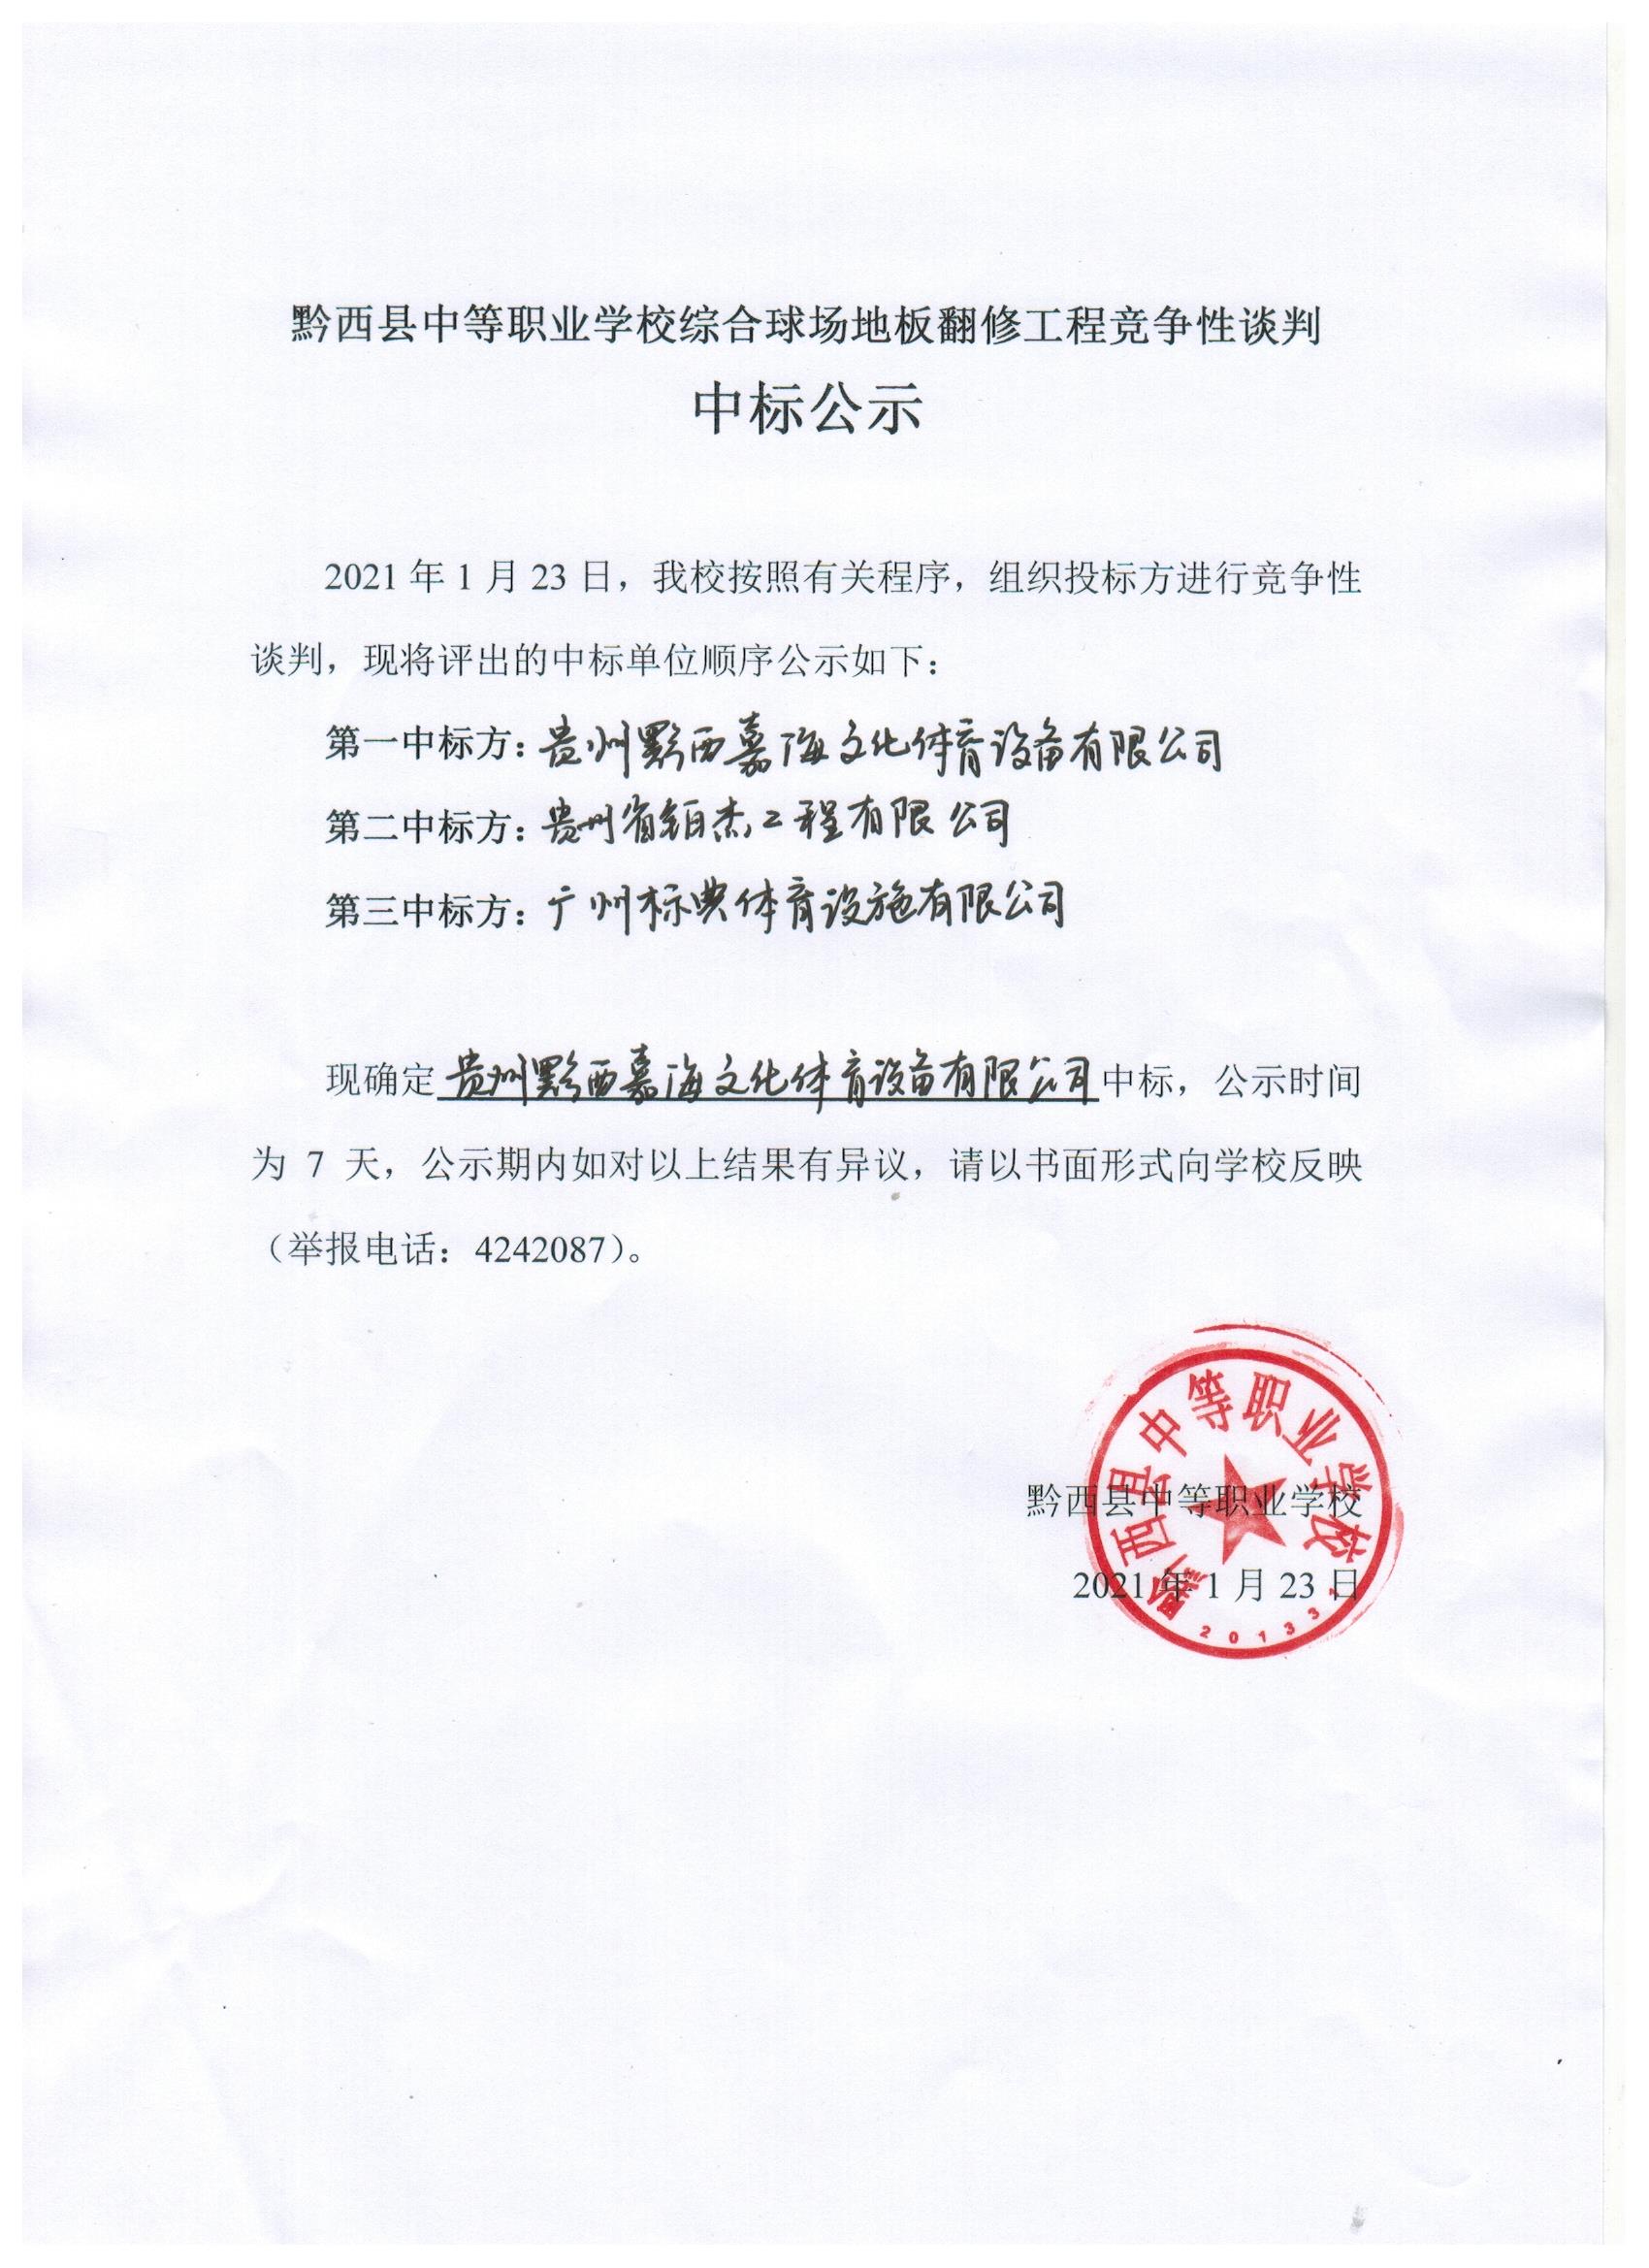 黔西县中等职业学校综合球场地板翻修工程竞争性谈判中标公示